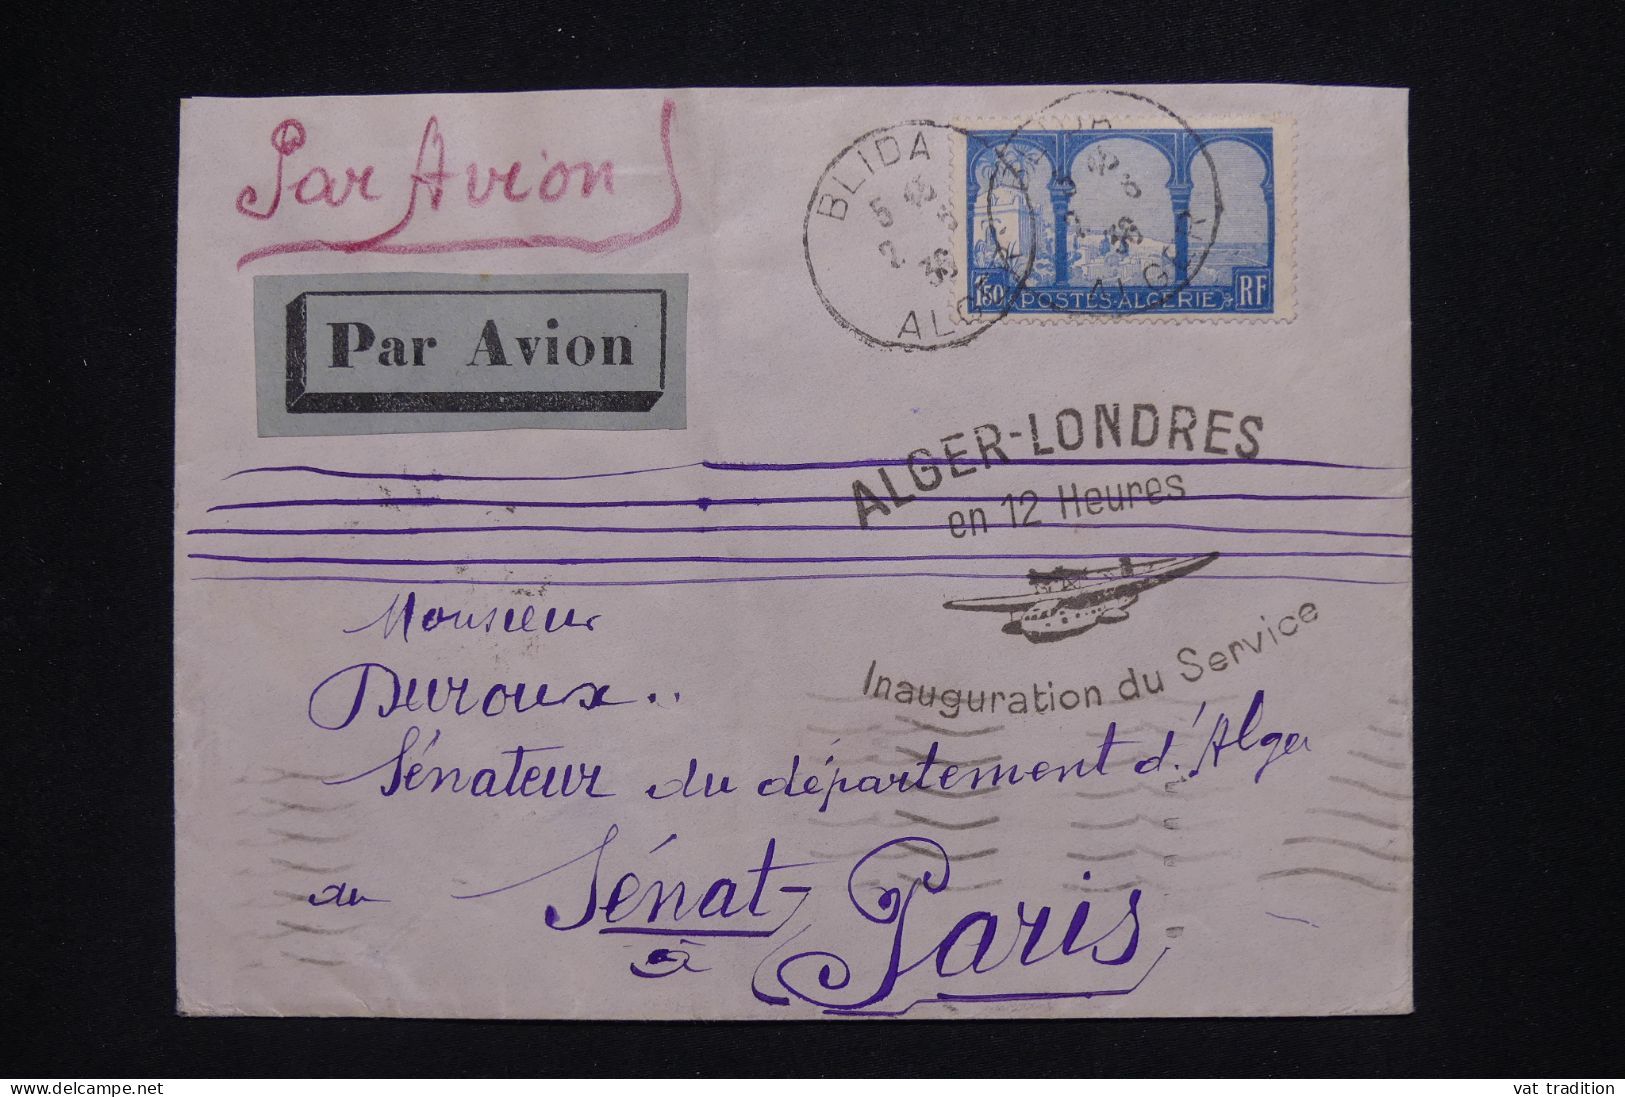 ALGERIE Française - Lettre Par Avion De Blida - Inauguration Alger Londres - 1936 - A 499 - Airmail